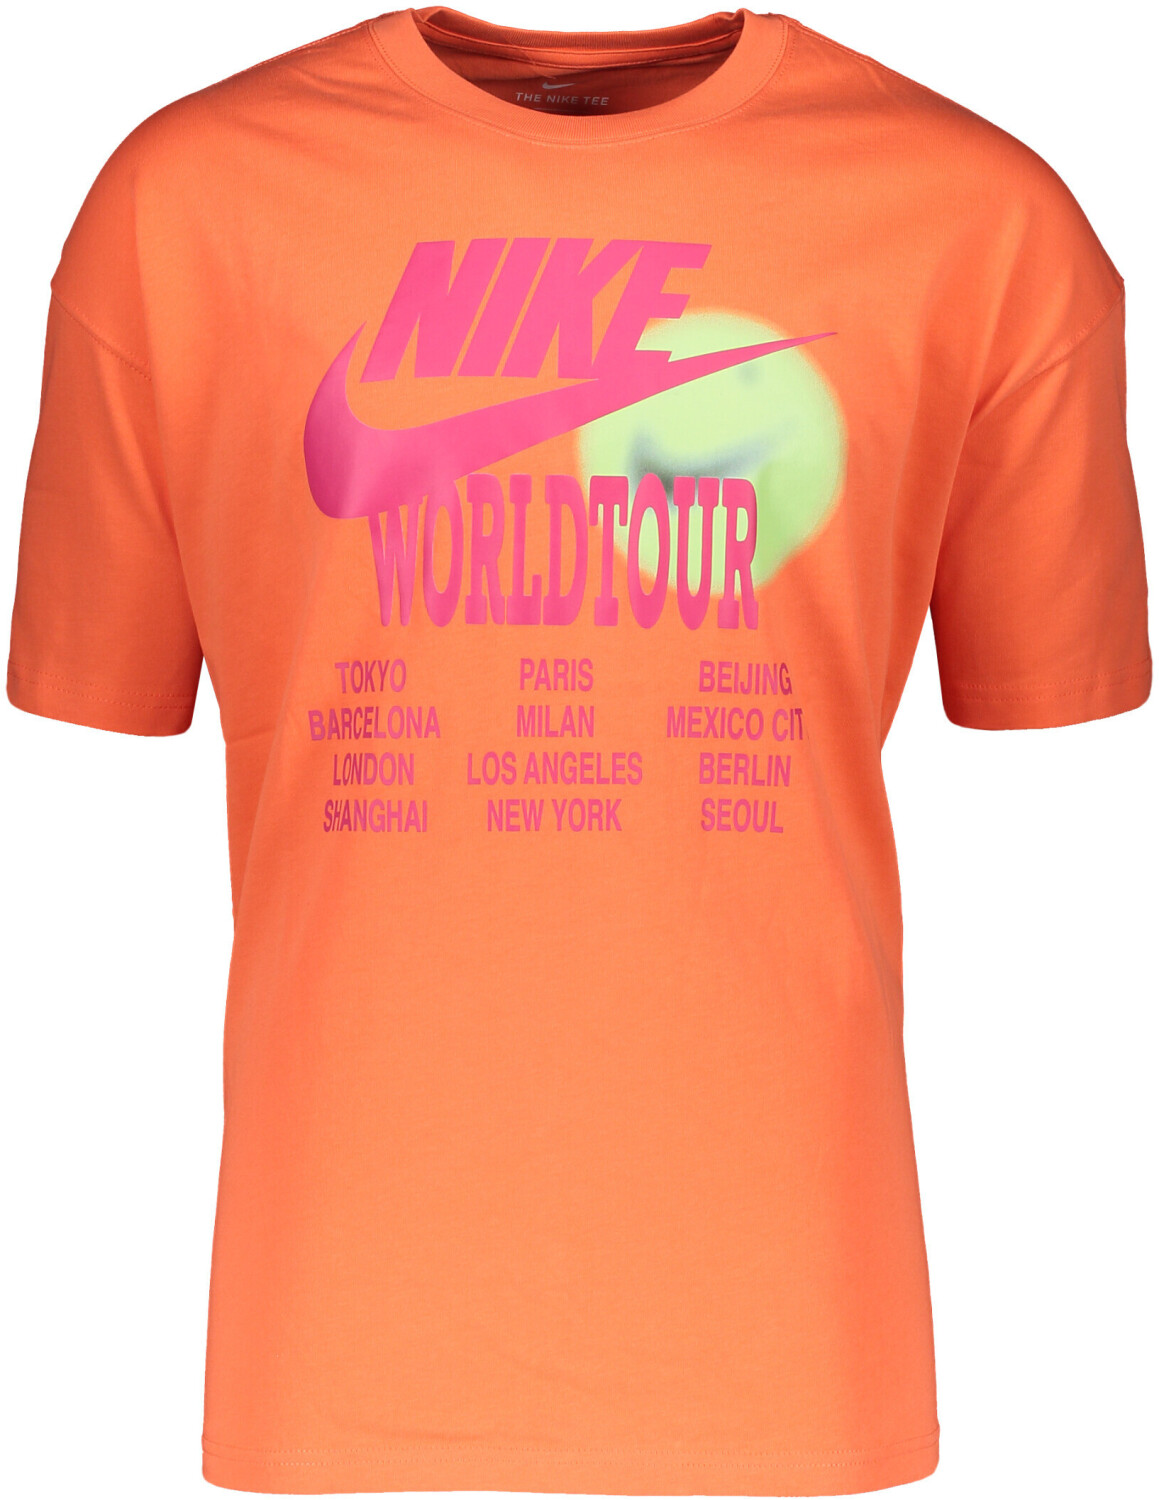 nike world tour orange